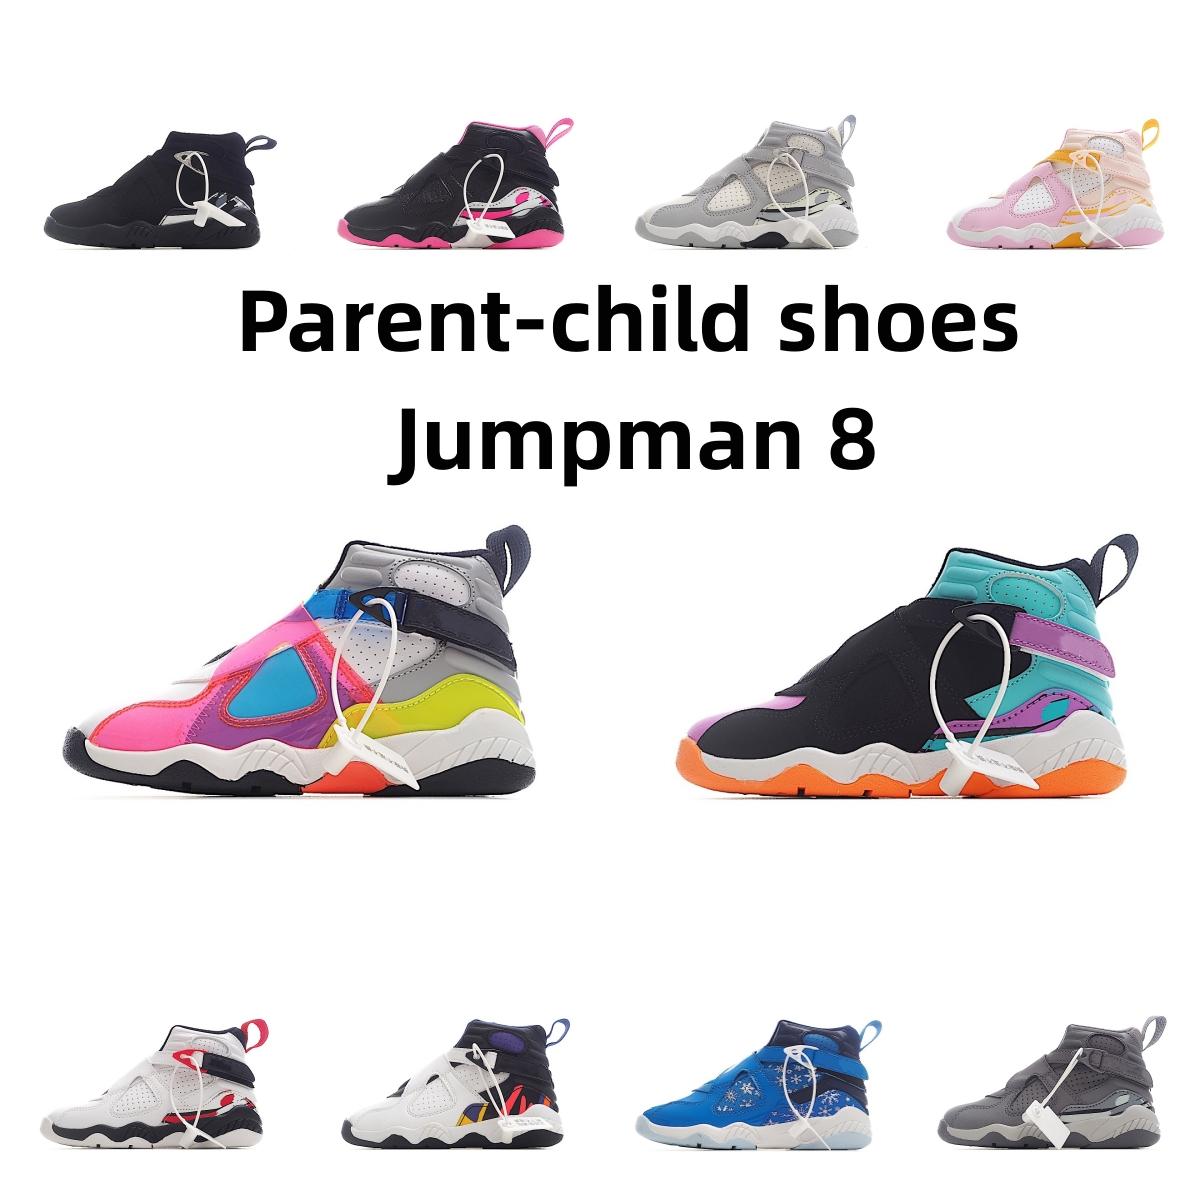 Jumpman 8 Buty koszykówki dla dzieci winogron 8s chłopcy i dziewczęta Treakery rodzicielskie trenerzy